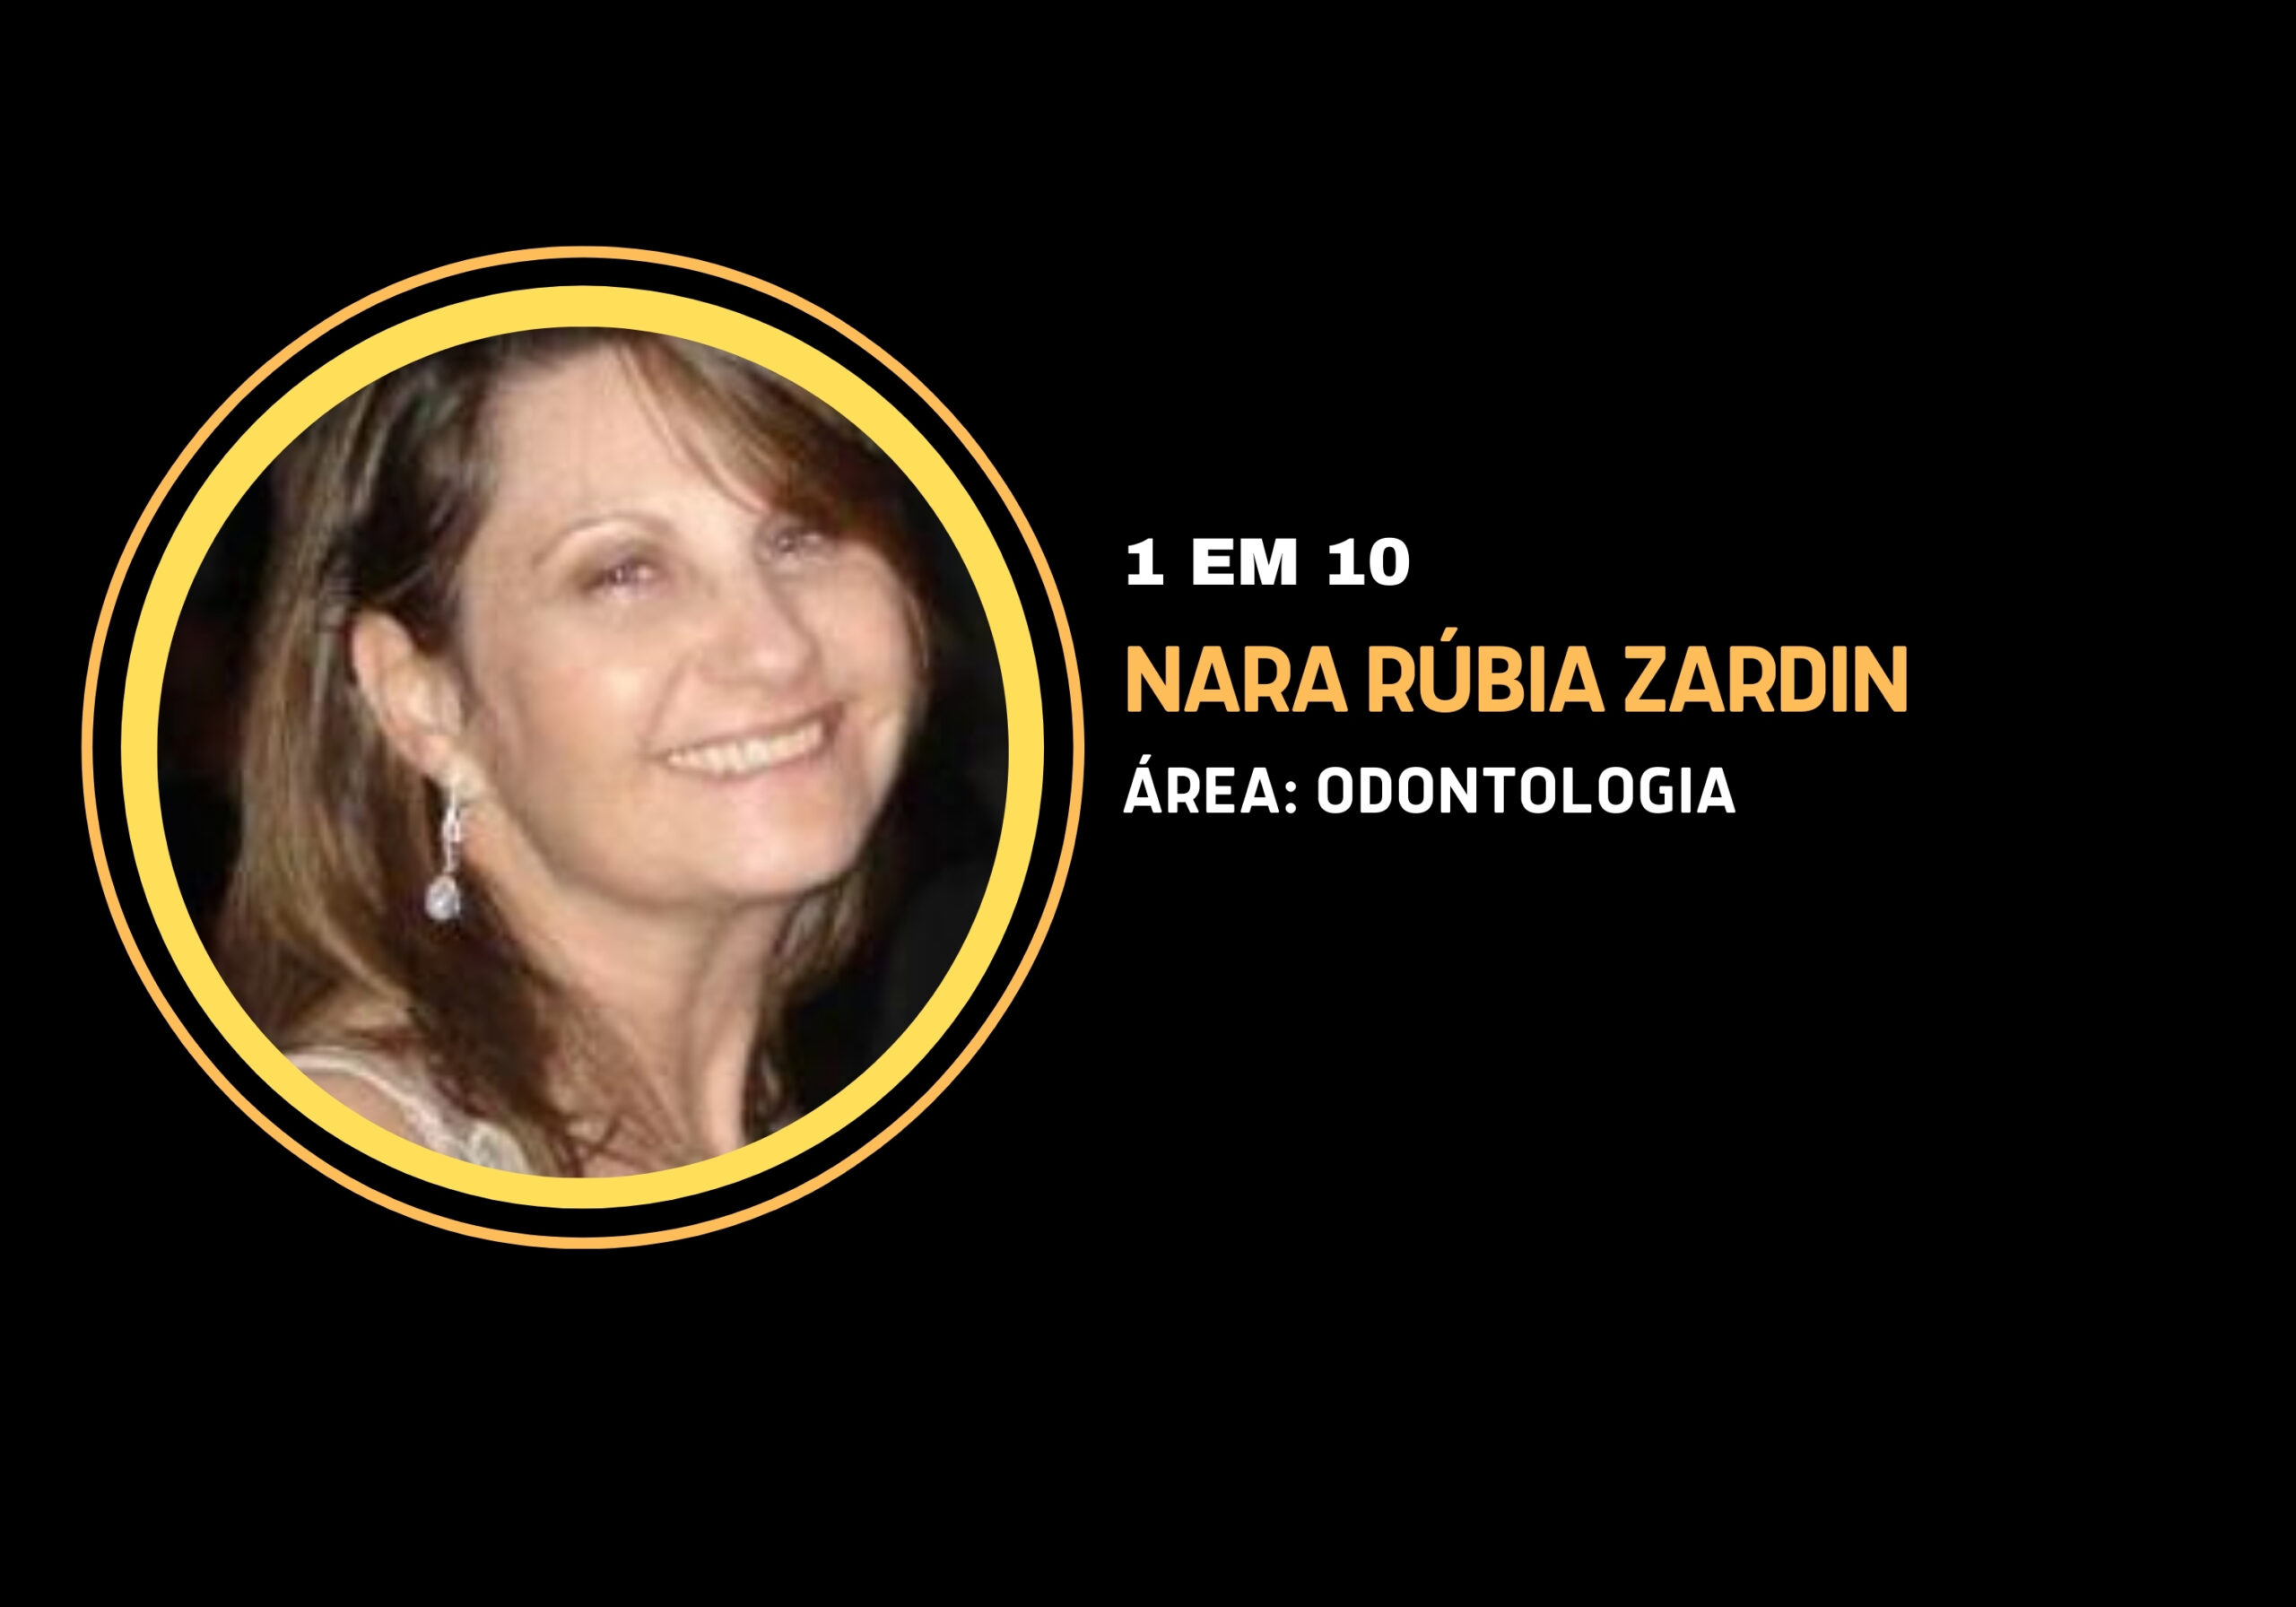 Nara Rúbia Zardin | 1 em 10